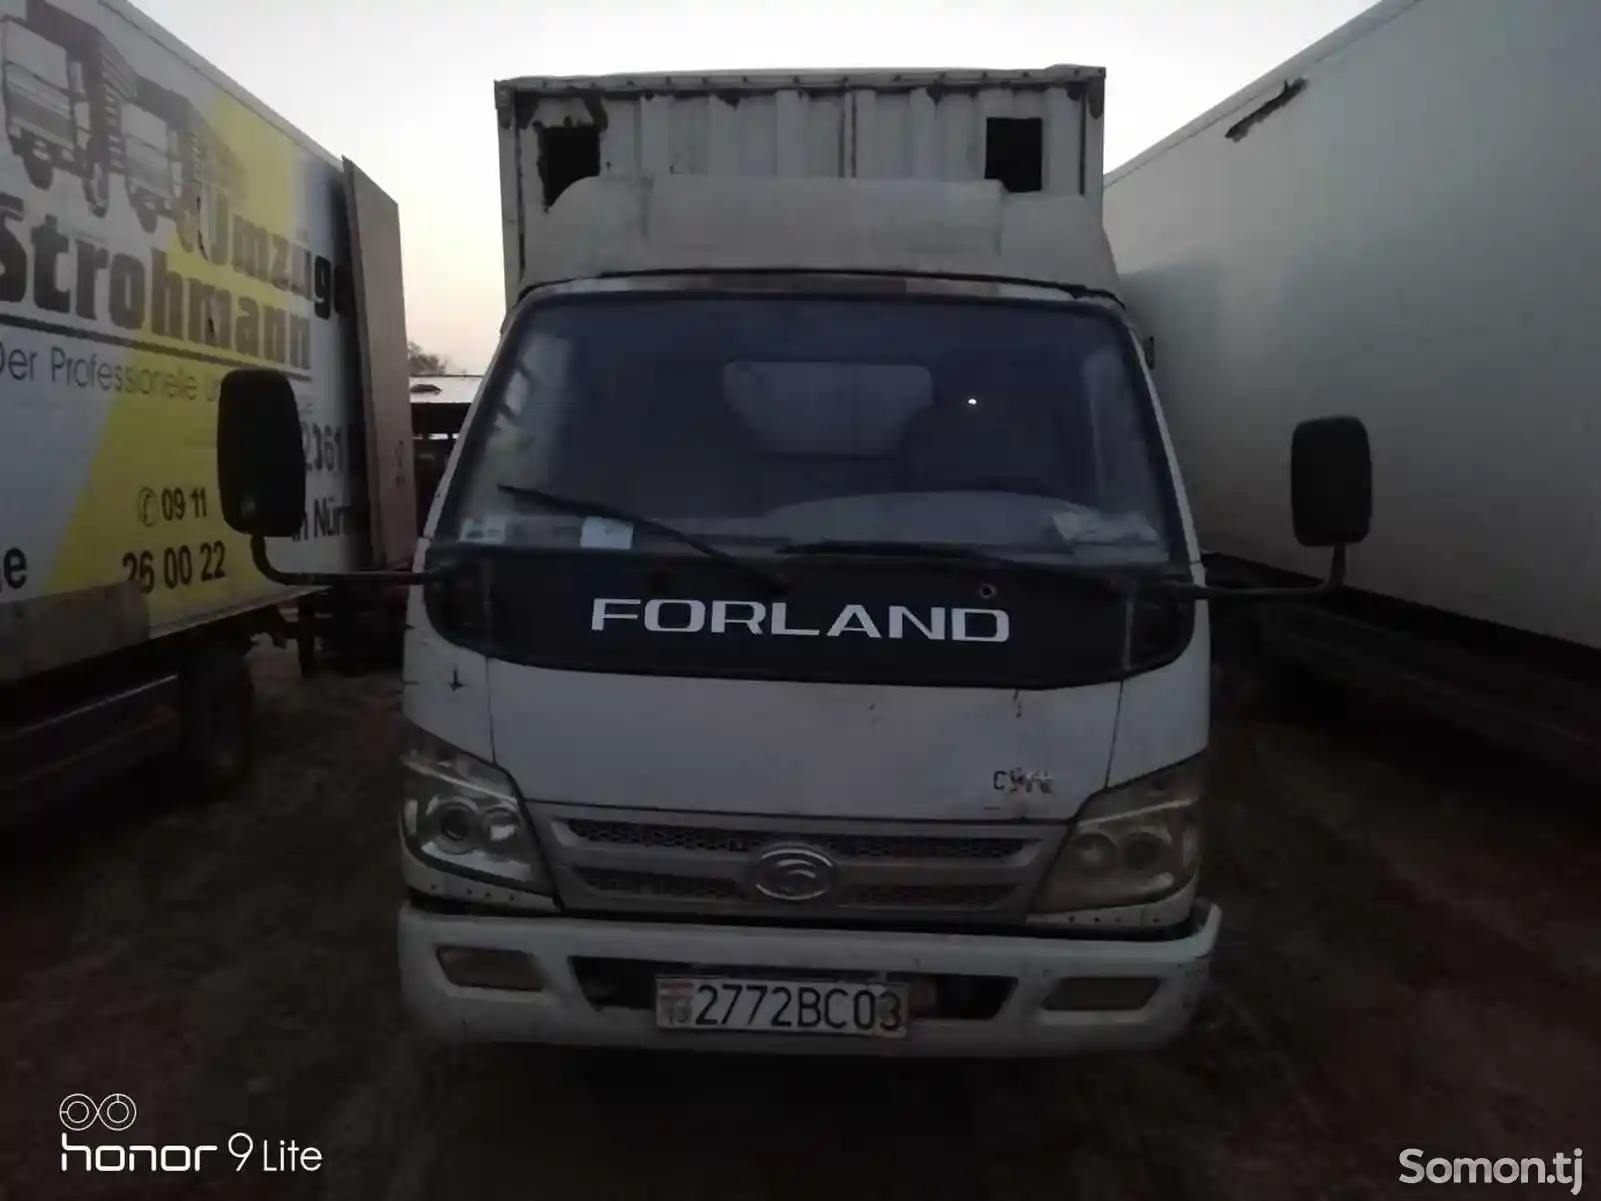 Фургон Forland, 2013-2